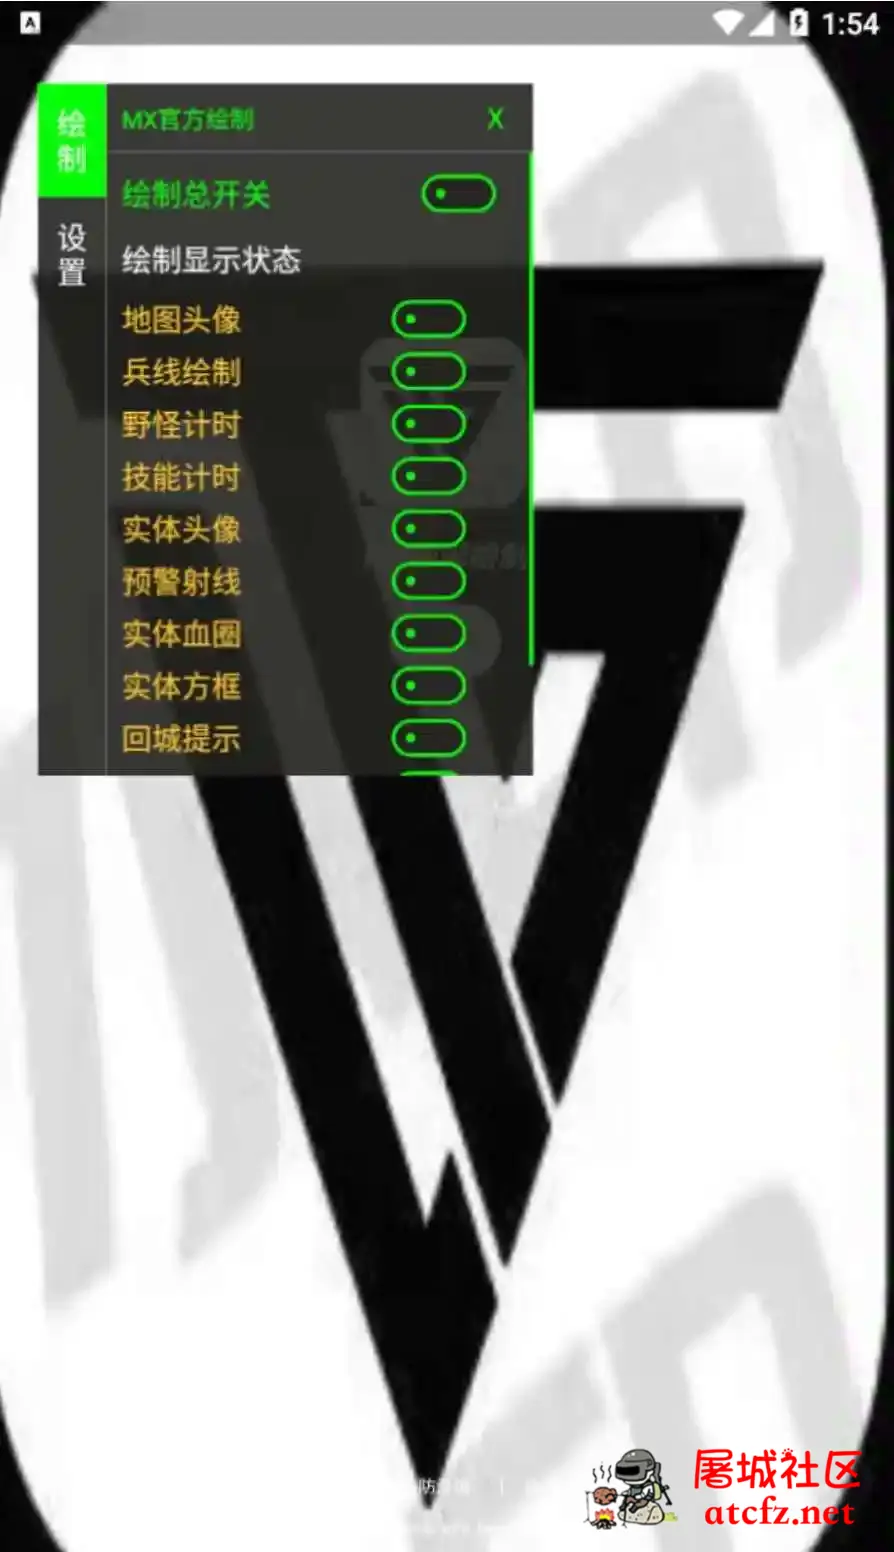 王者荣耀MX绘制透视CD野怪计时插件破解版 屠城辅助网www.tcfz1.com2146